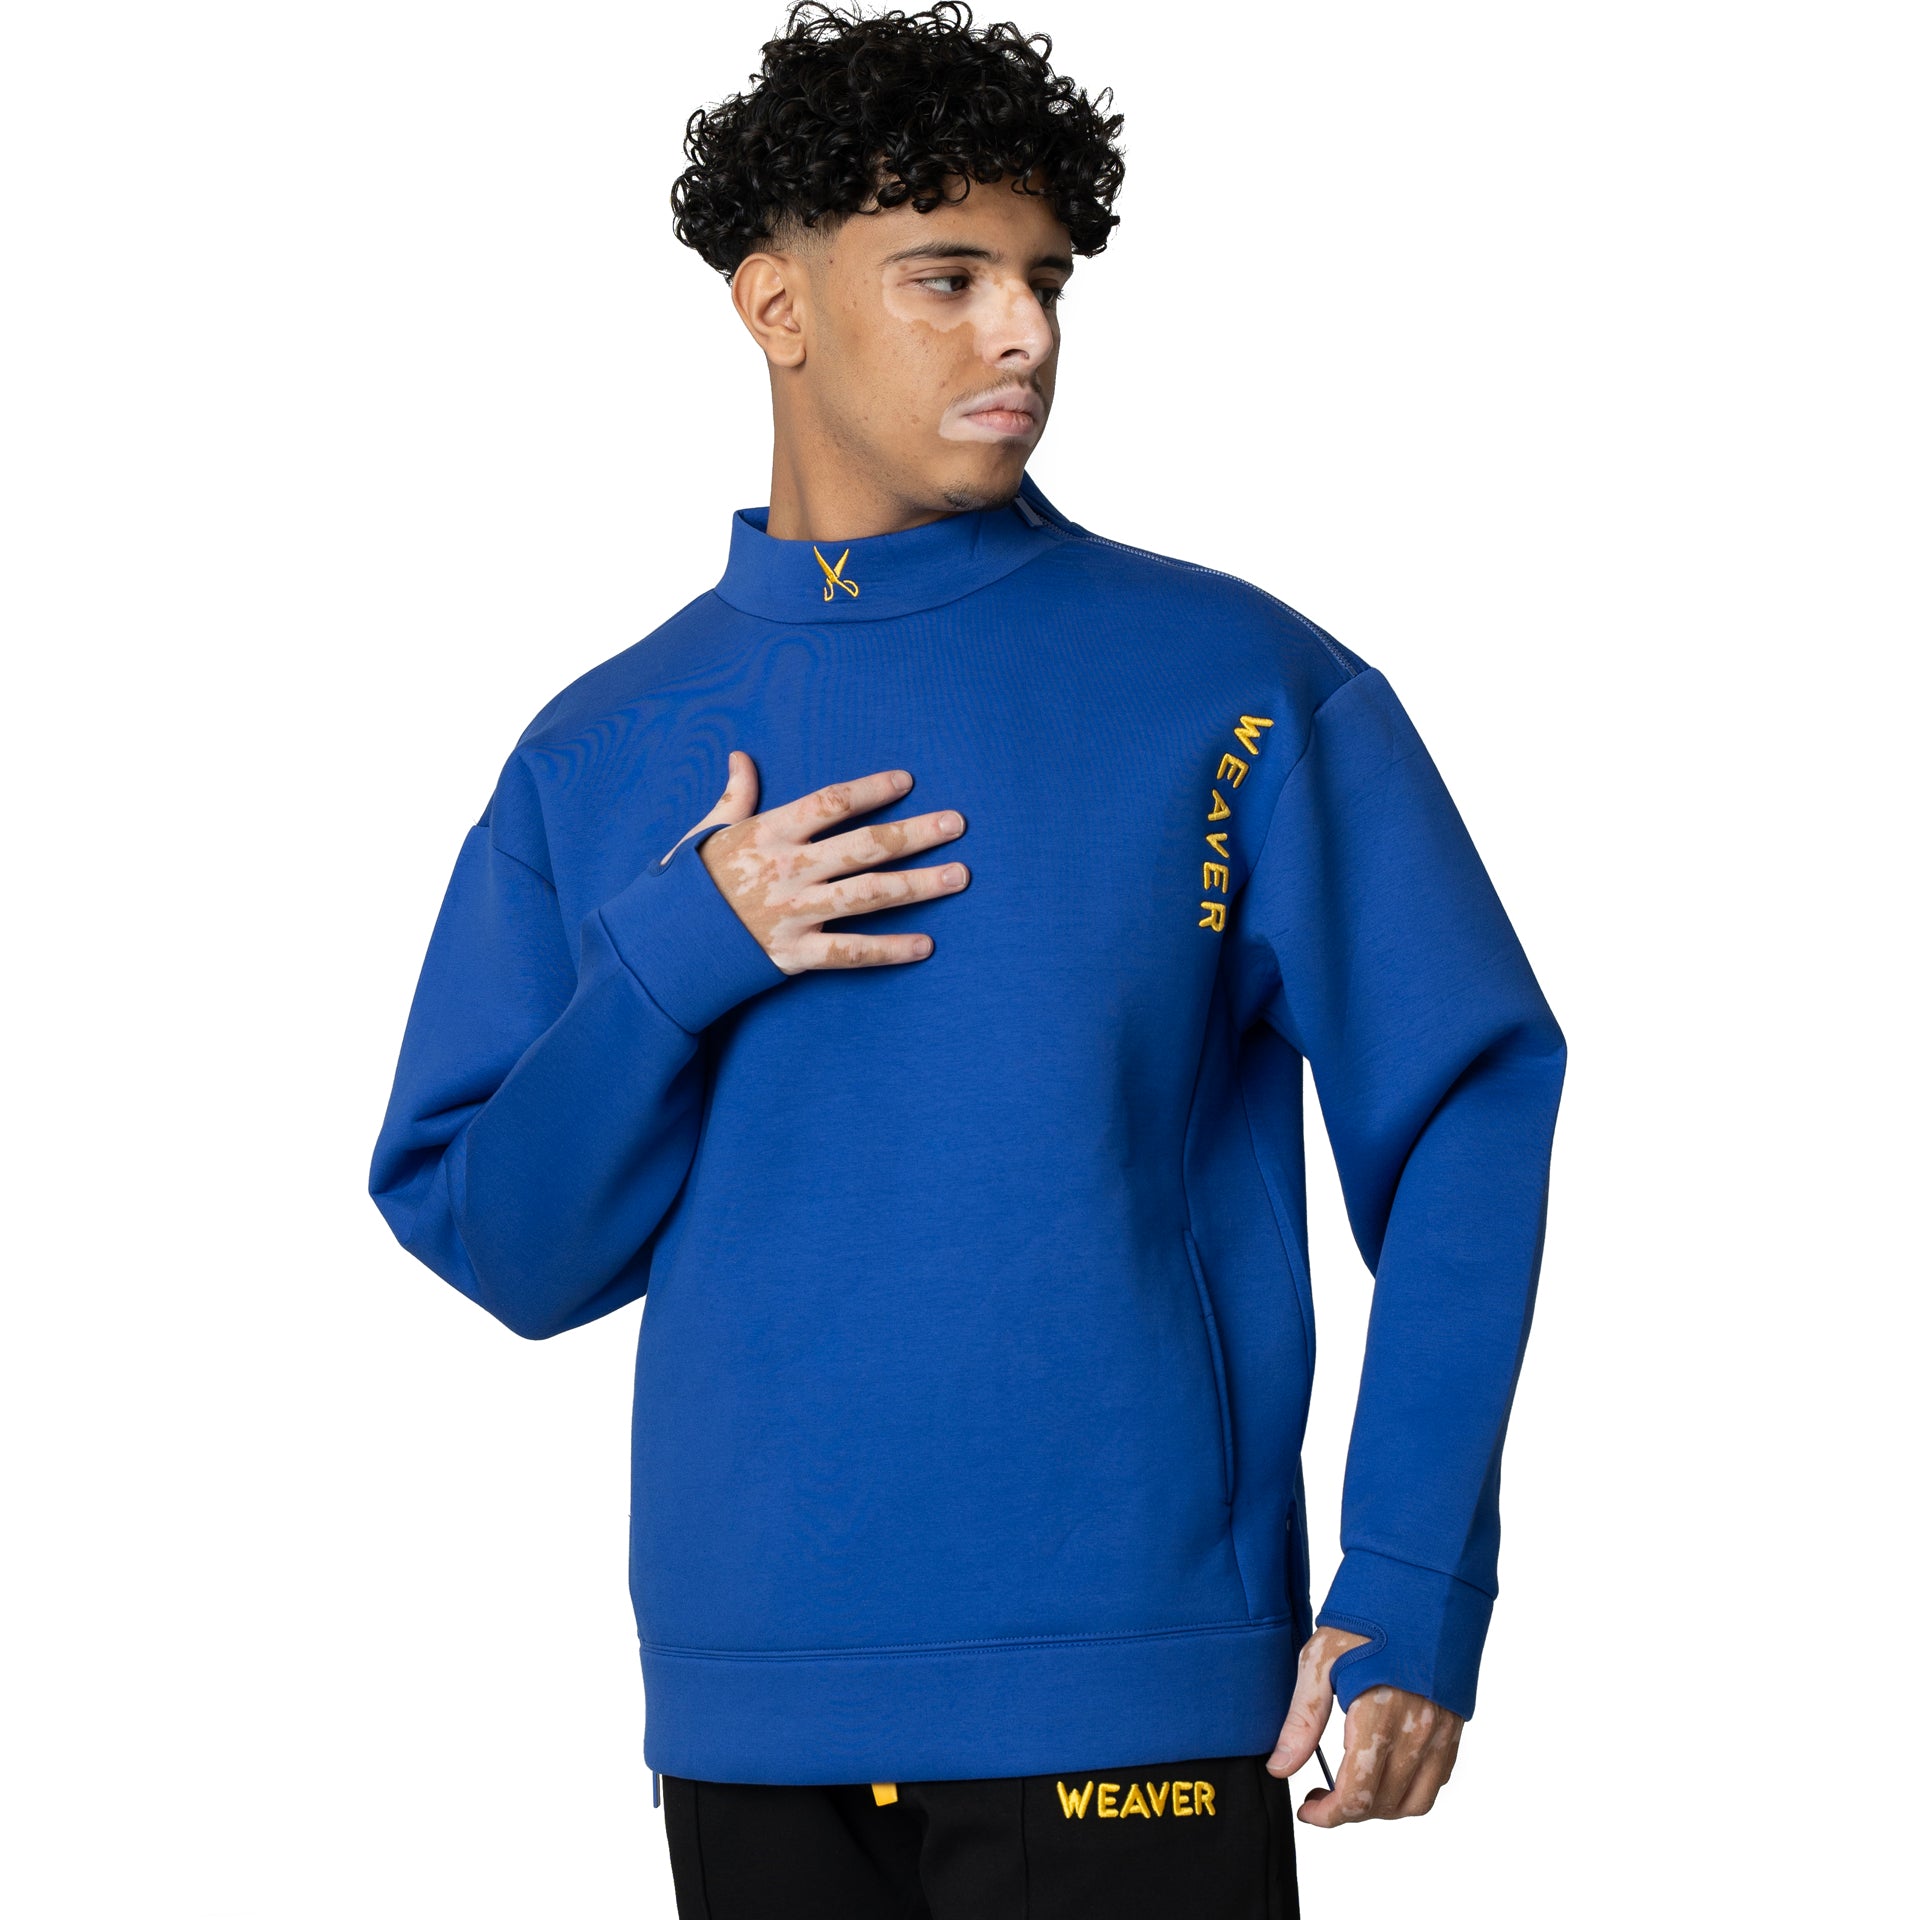 Blue High Neck Shirt From Weaver Design